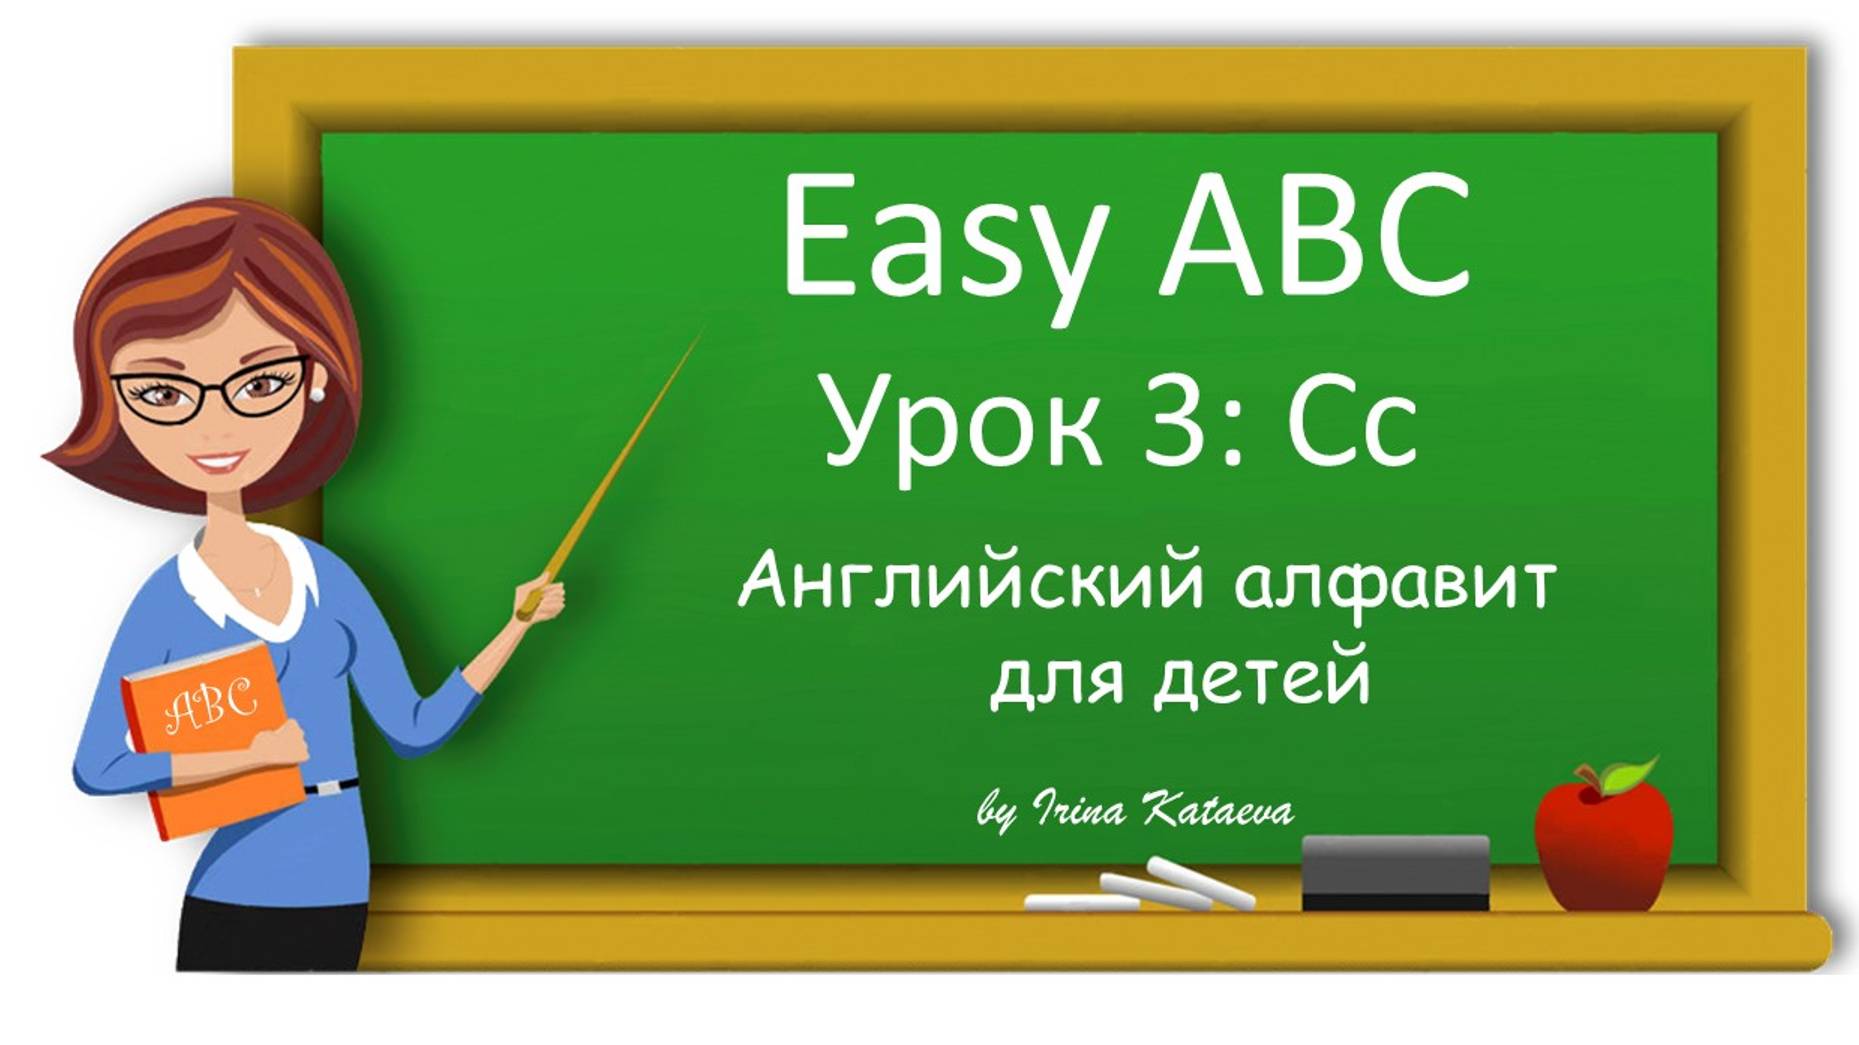 Урок 3. Cc (Easy ABC)